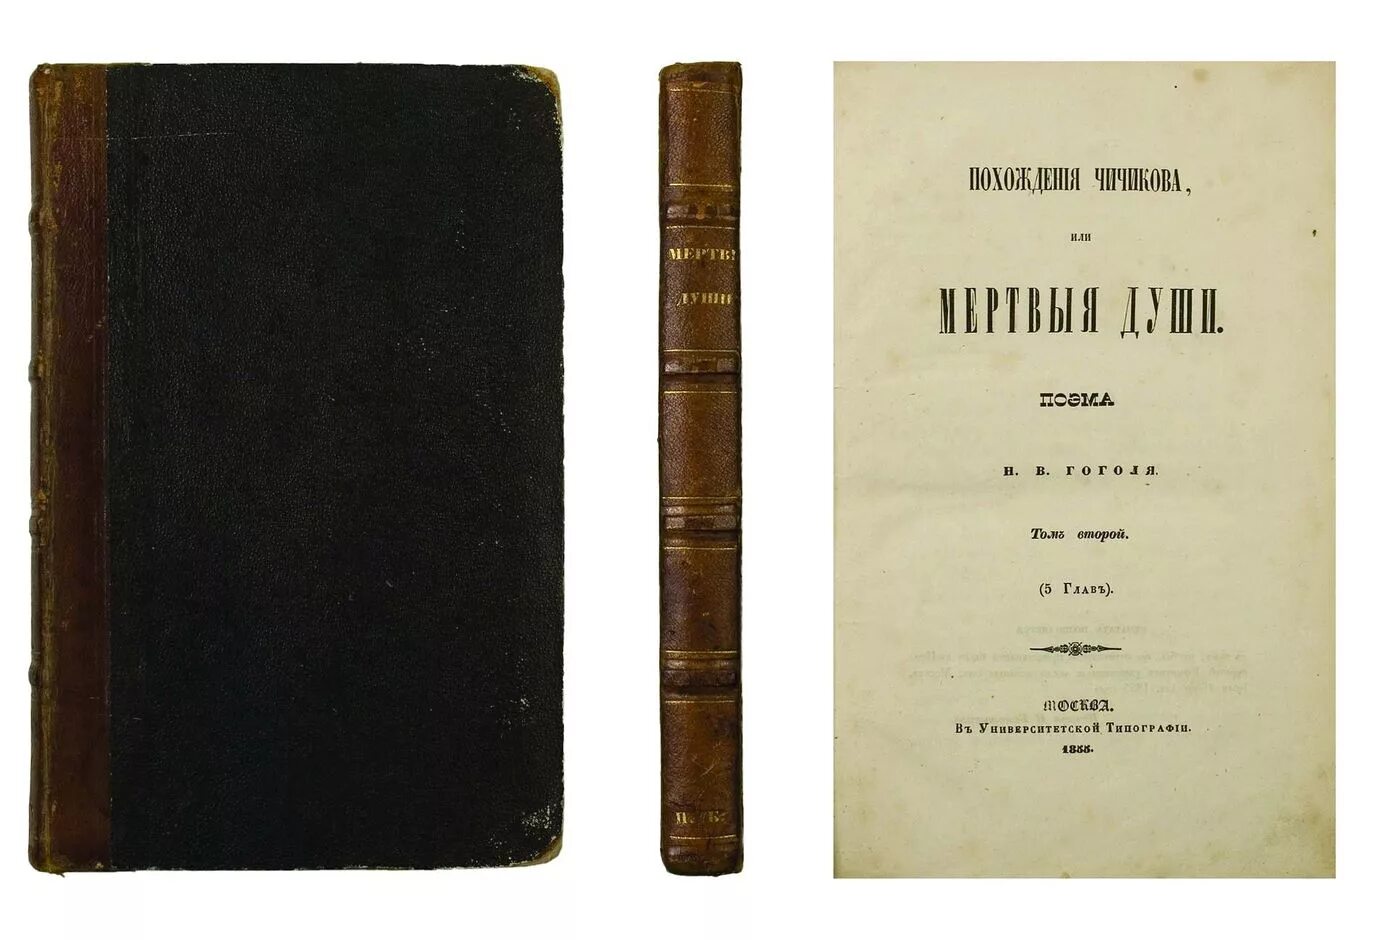 Первая душа. Гоголь мертвые души первое издание. Мёртвые души книга 1842.